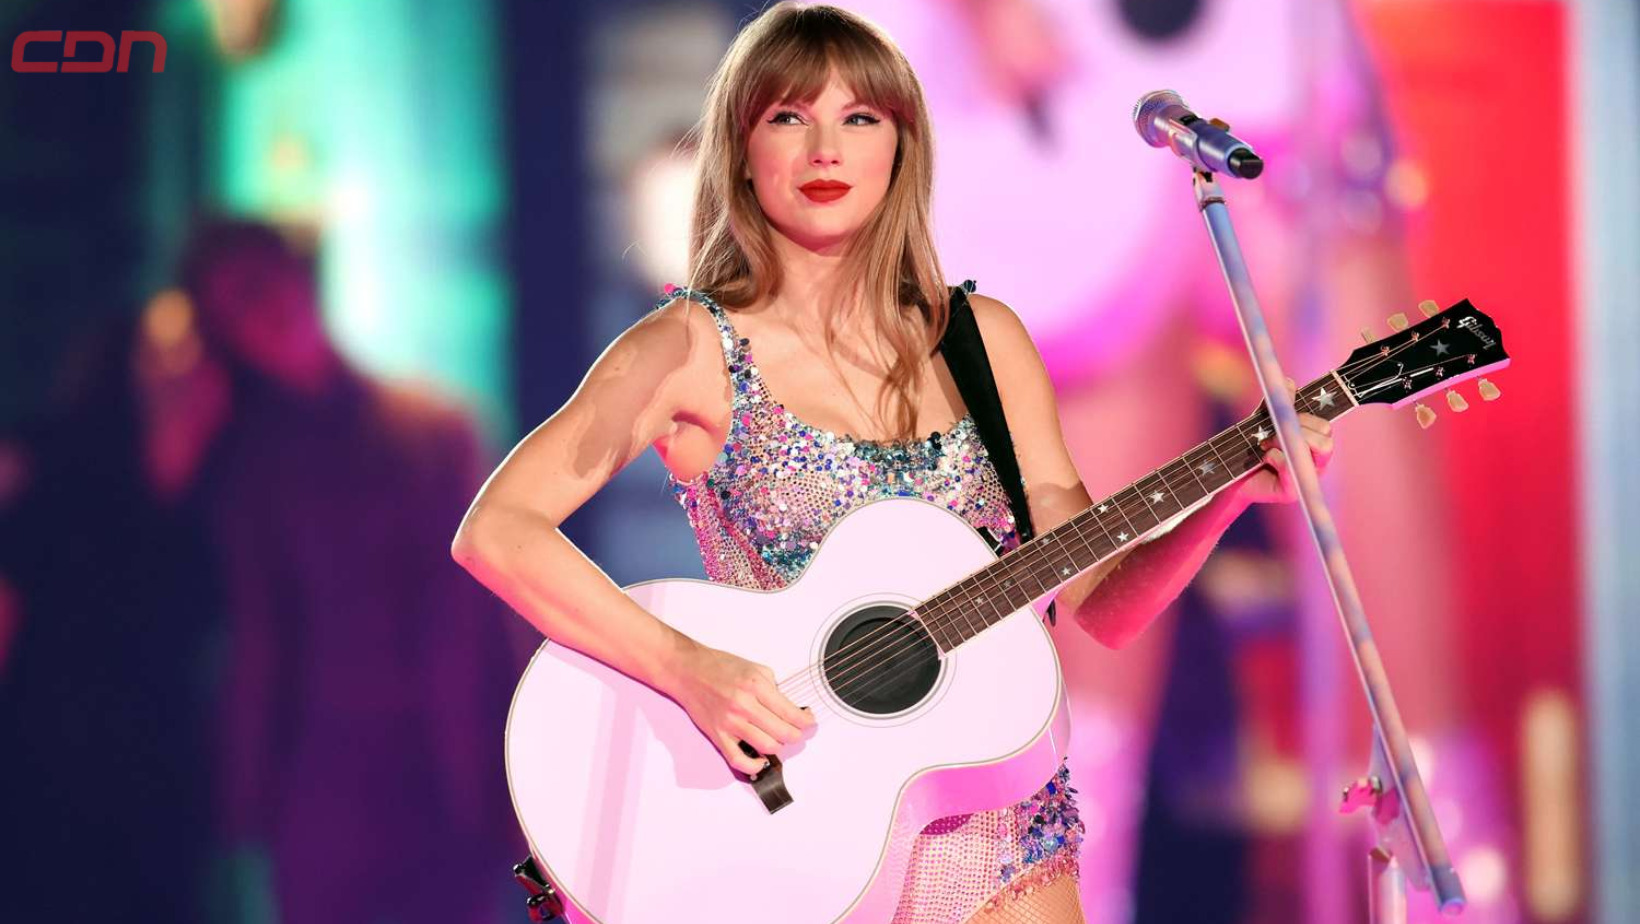 La cantante y compositora estadounidense, Taylor Swift. Foto: Fuente externa